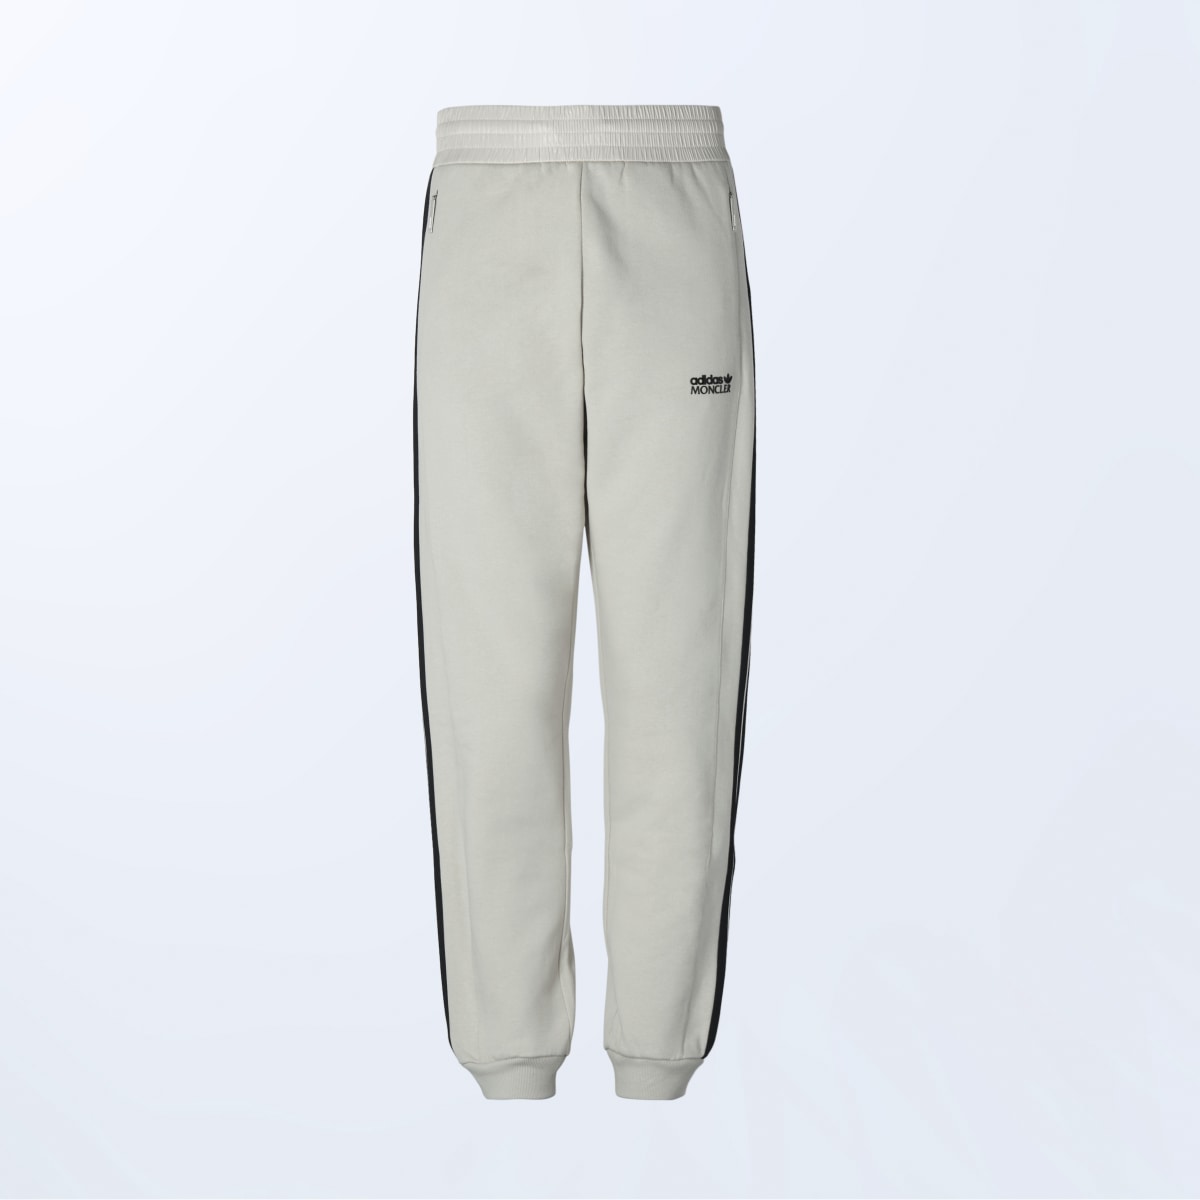 Adidas Sweat pants Moncler x adidas Originals. 6